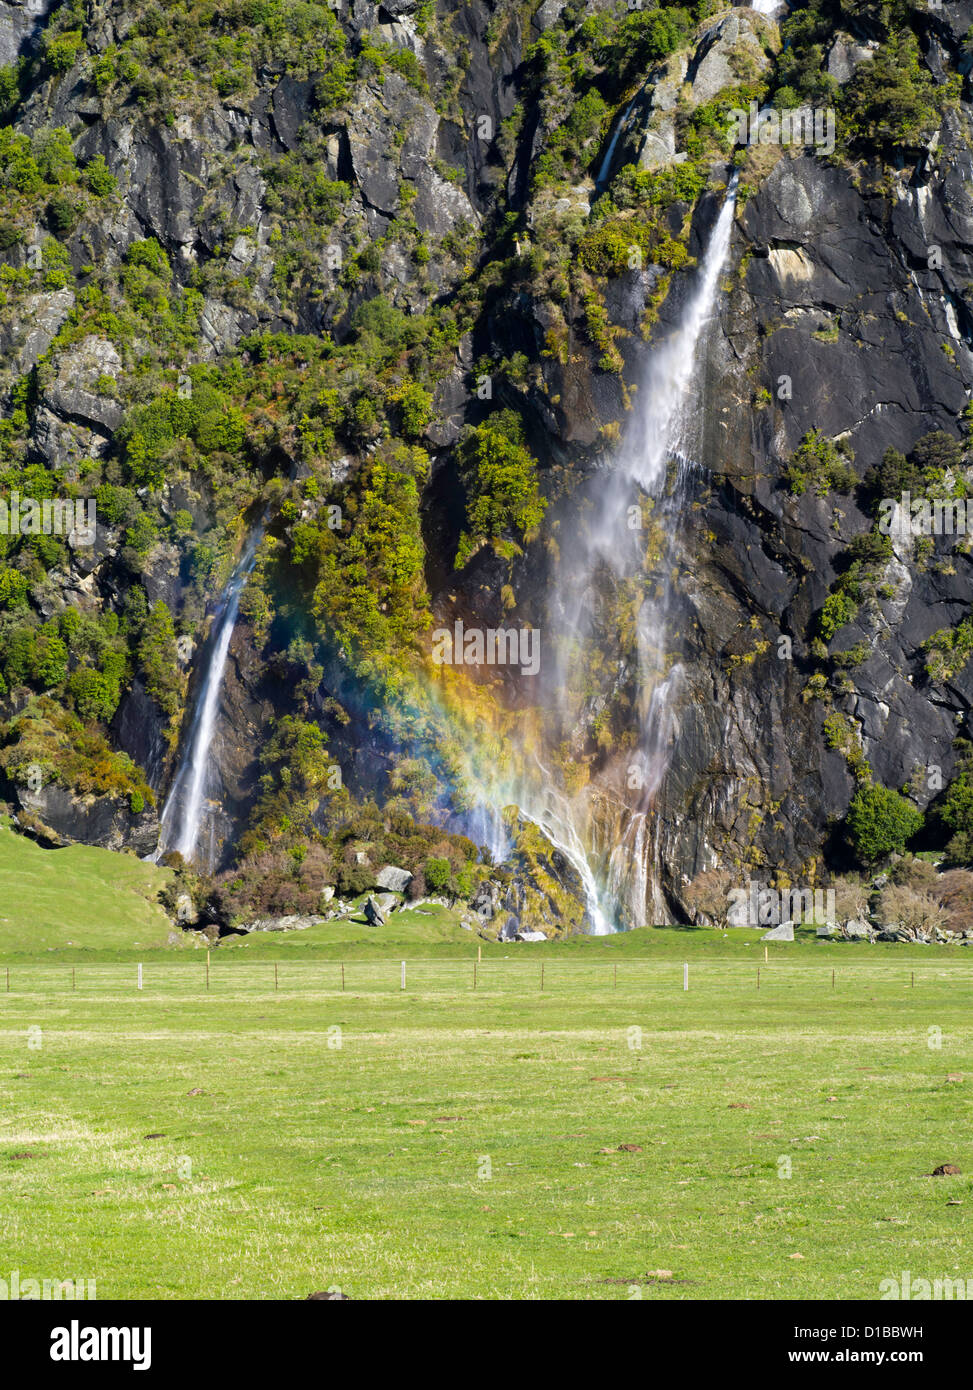 Anzeigen von wishbone fällt, Harris Berge, entlang der matukituki River, in der Nähe von Mt Aspiring Nationalpark und Wanaka, Neuseeland Stockfoto